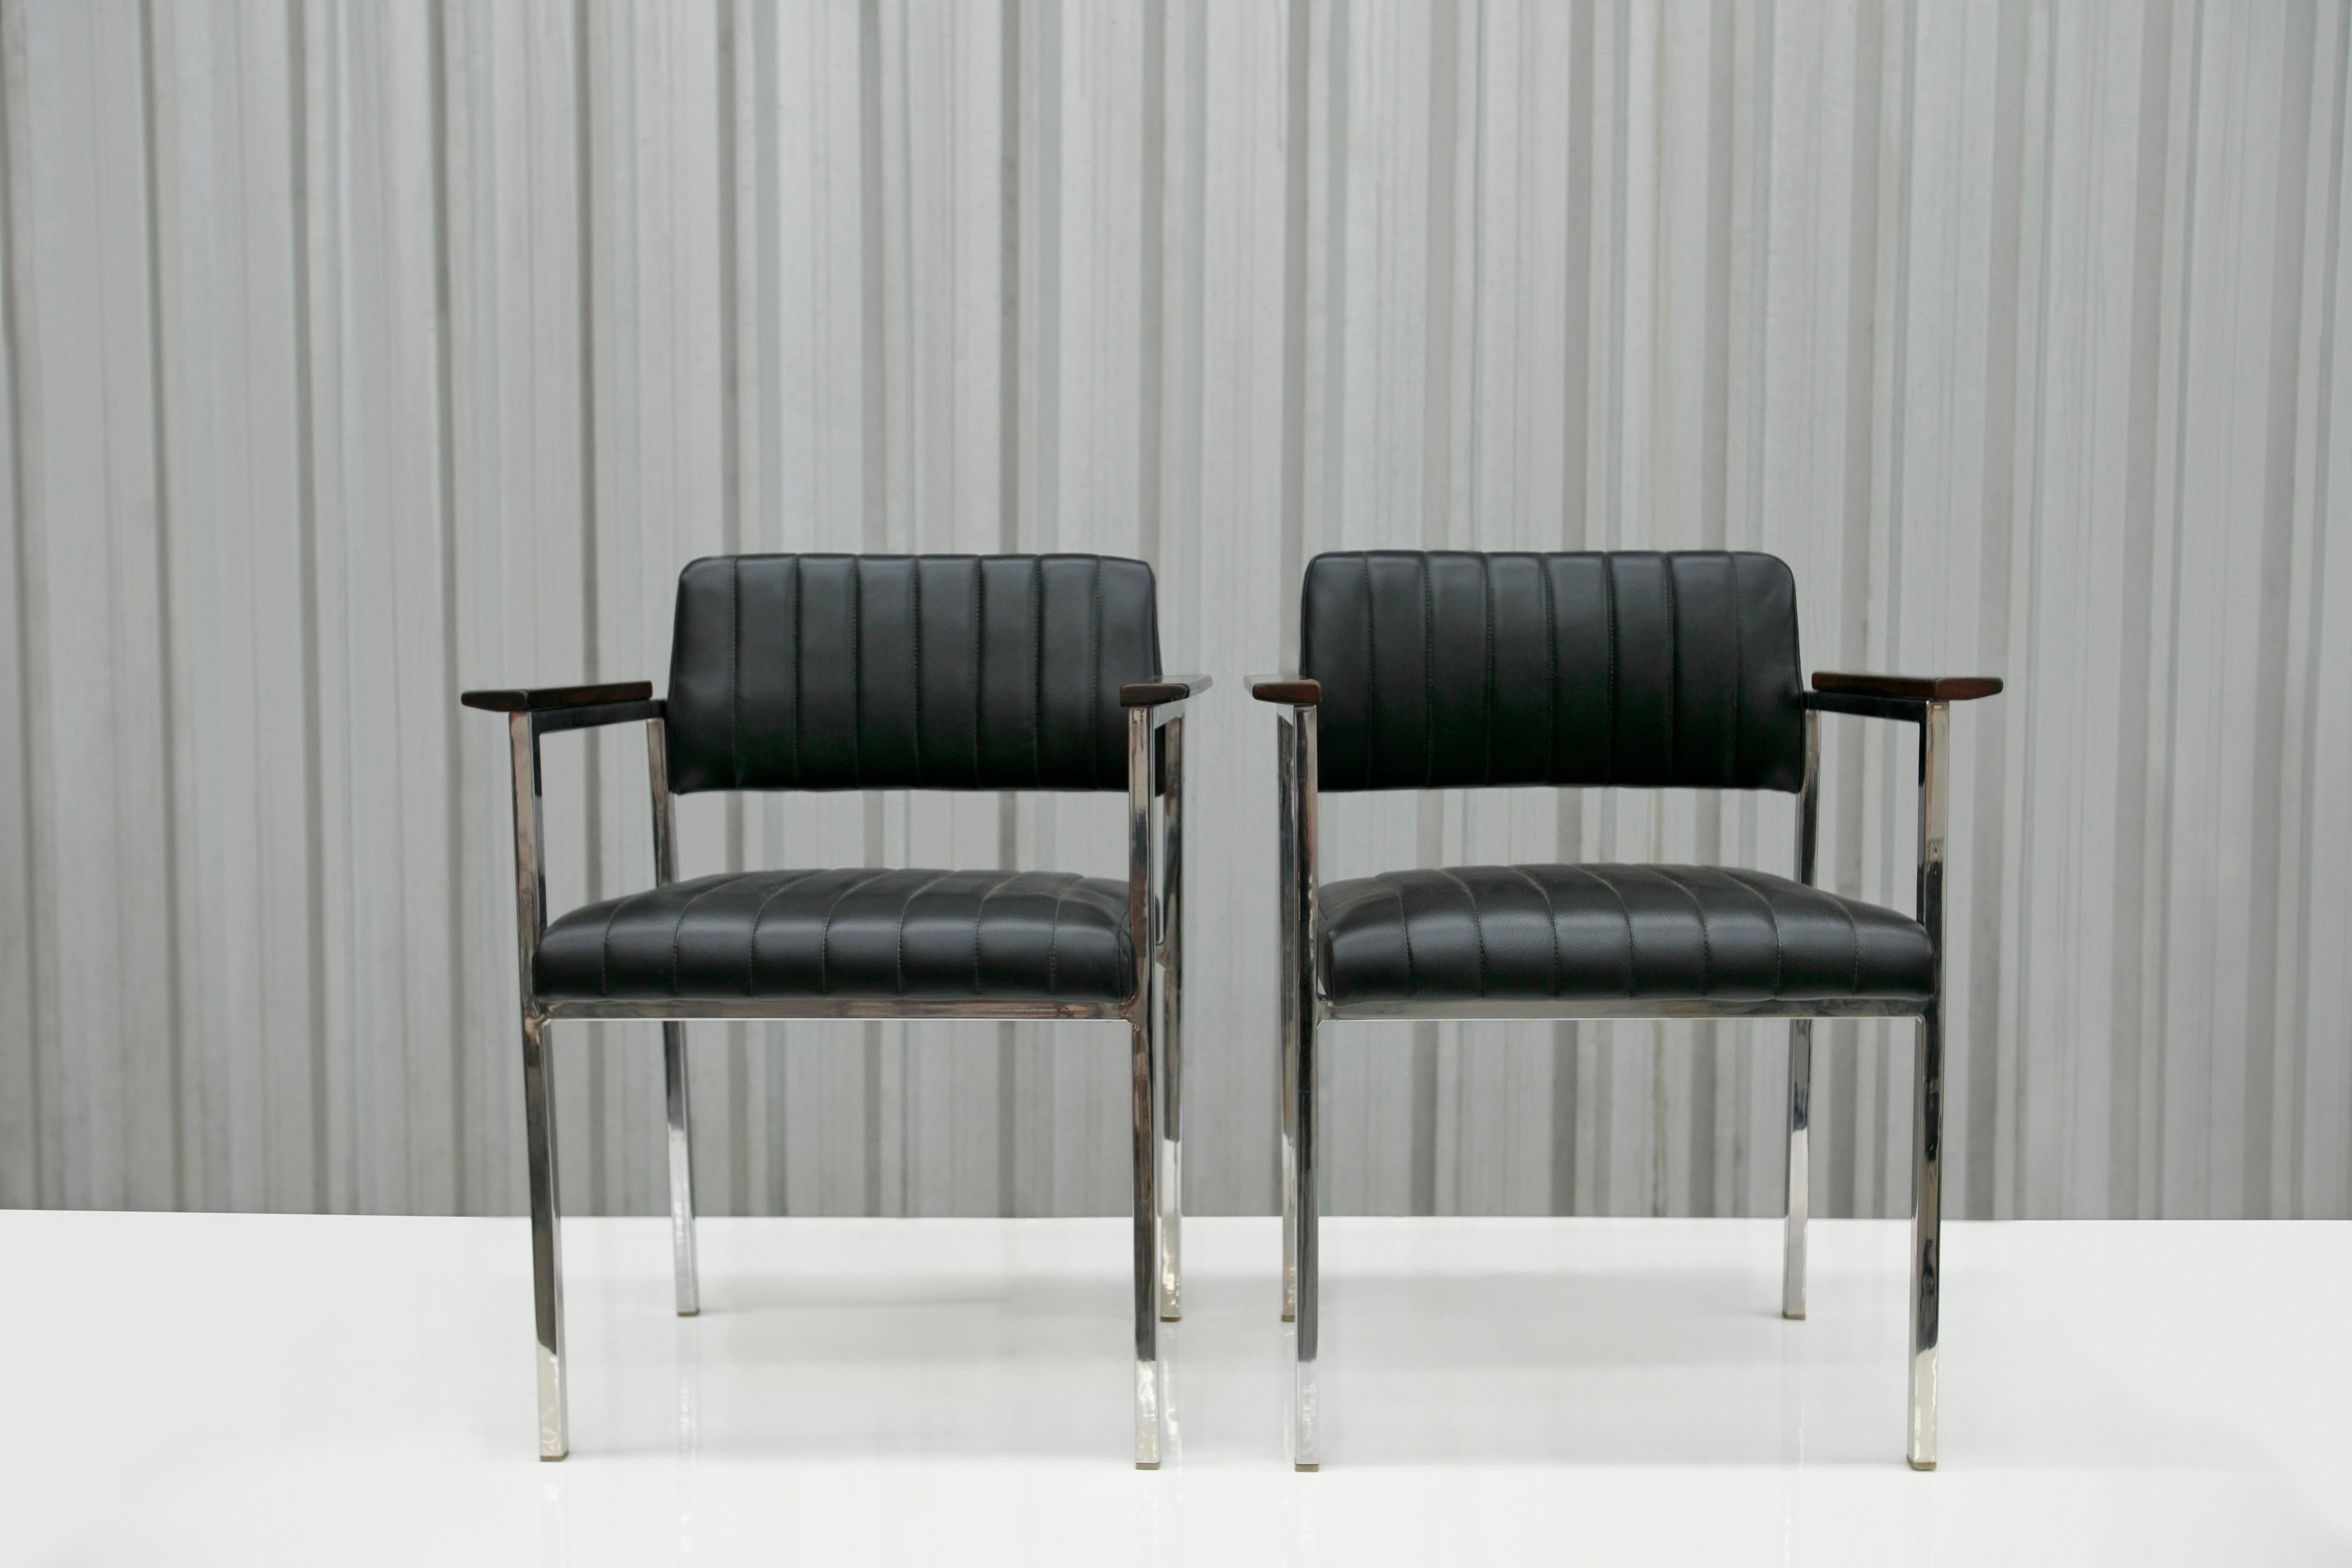 Disponibles aujourd'hui, ces fauteuils modernes brésiliens en acier, cuir et bois inconnus, années 1960, Brésil, sont magnifiques. 

La structure de ces chaises est en acier et l'assise et le dossier sont en cuir noir. En outre, les accoudoirs sont